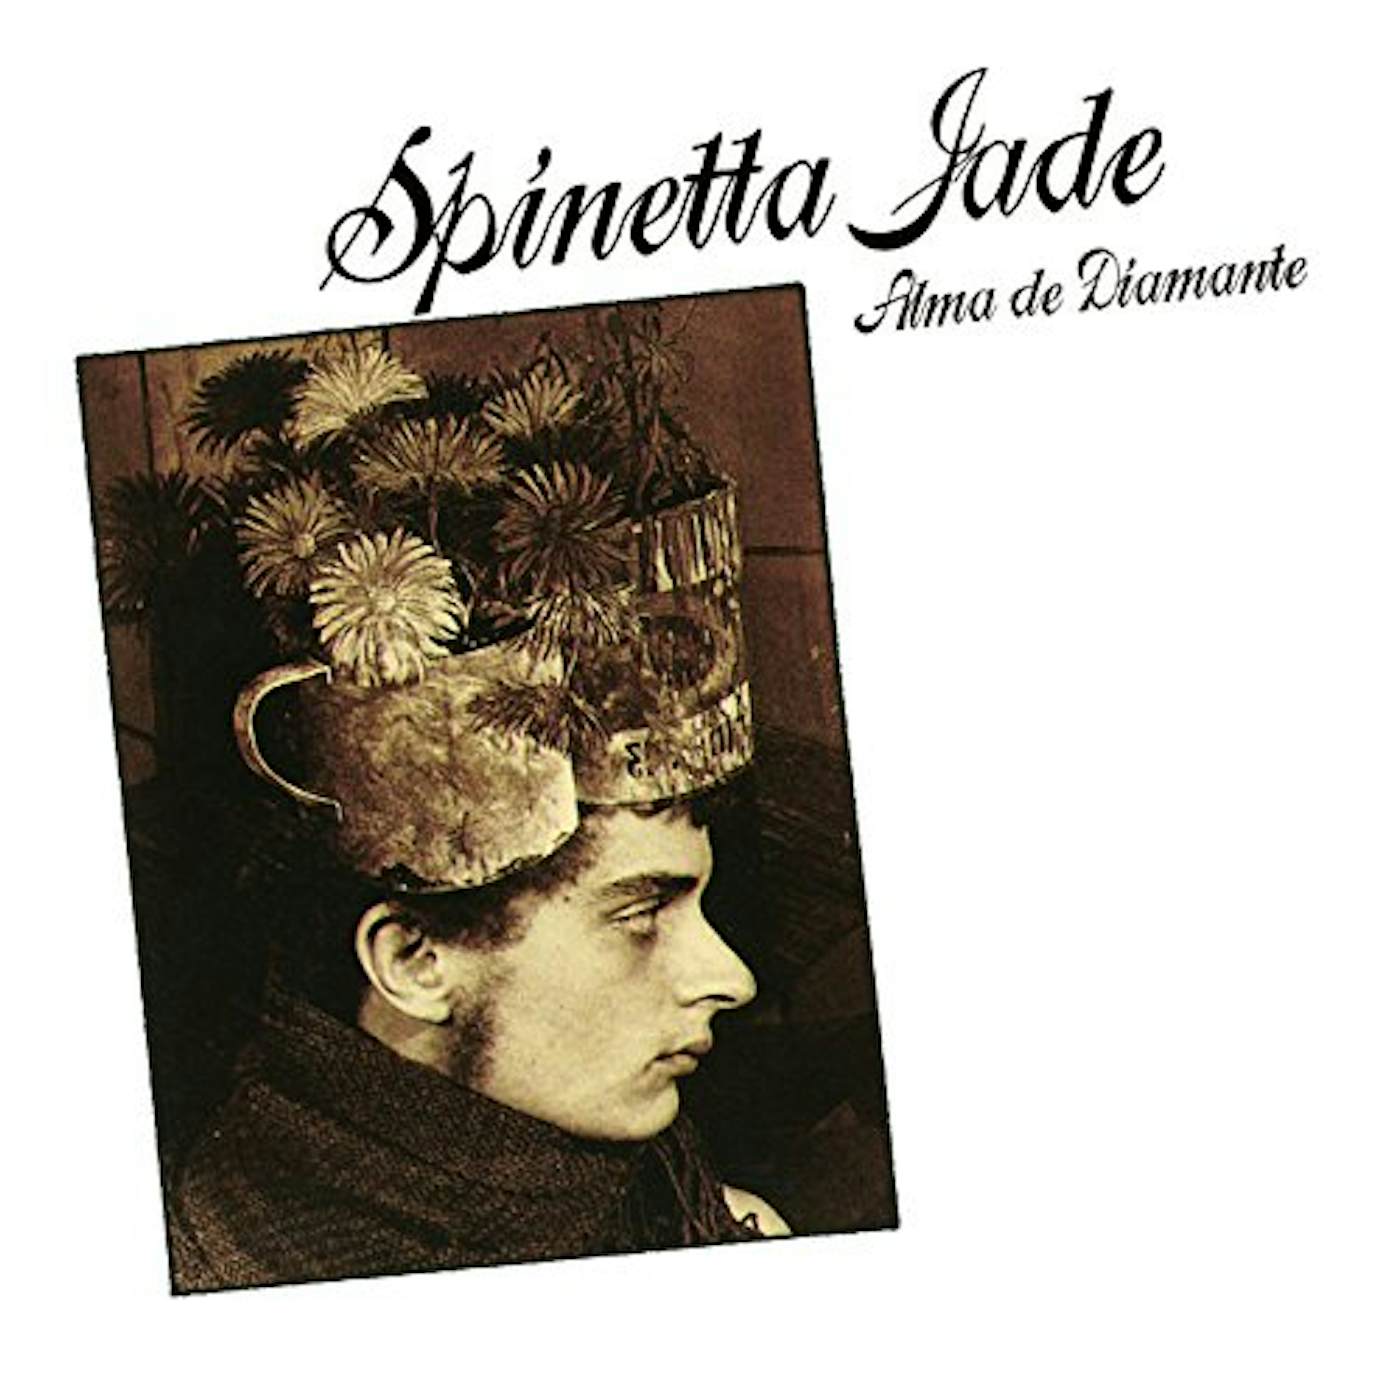 Spinetta Jade Alma de Diamante Vinyl Record